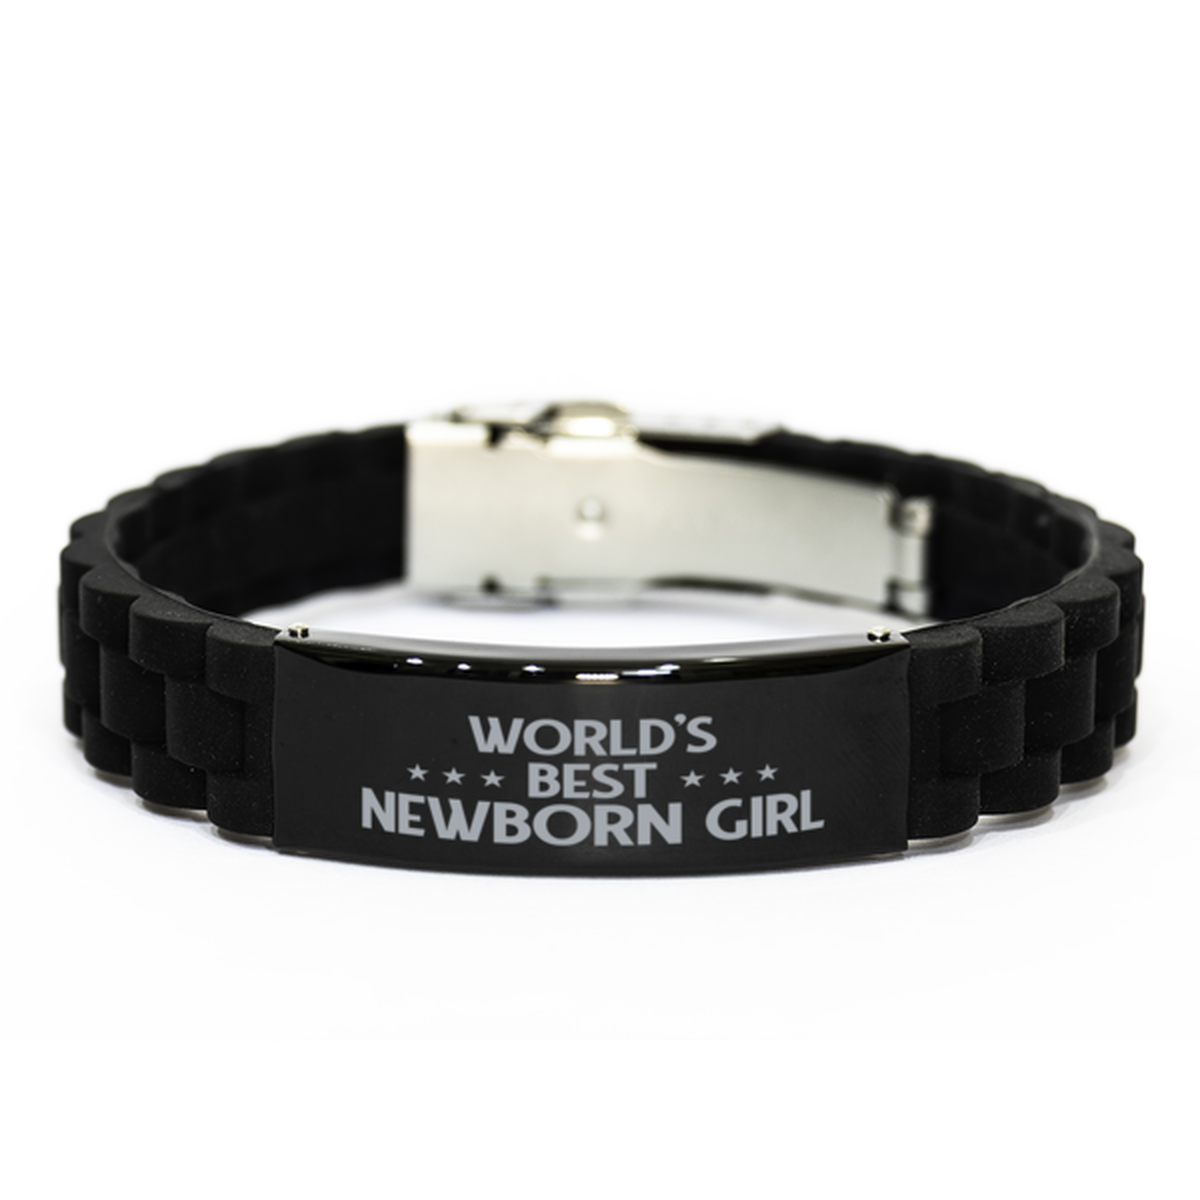 World's Best Newborn girl Gifts, Funny Black Engraved Bracelet For Newborn girl, Family Gifts For Women